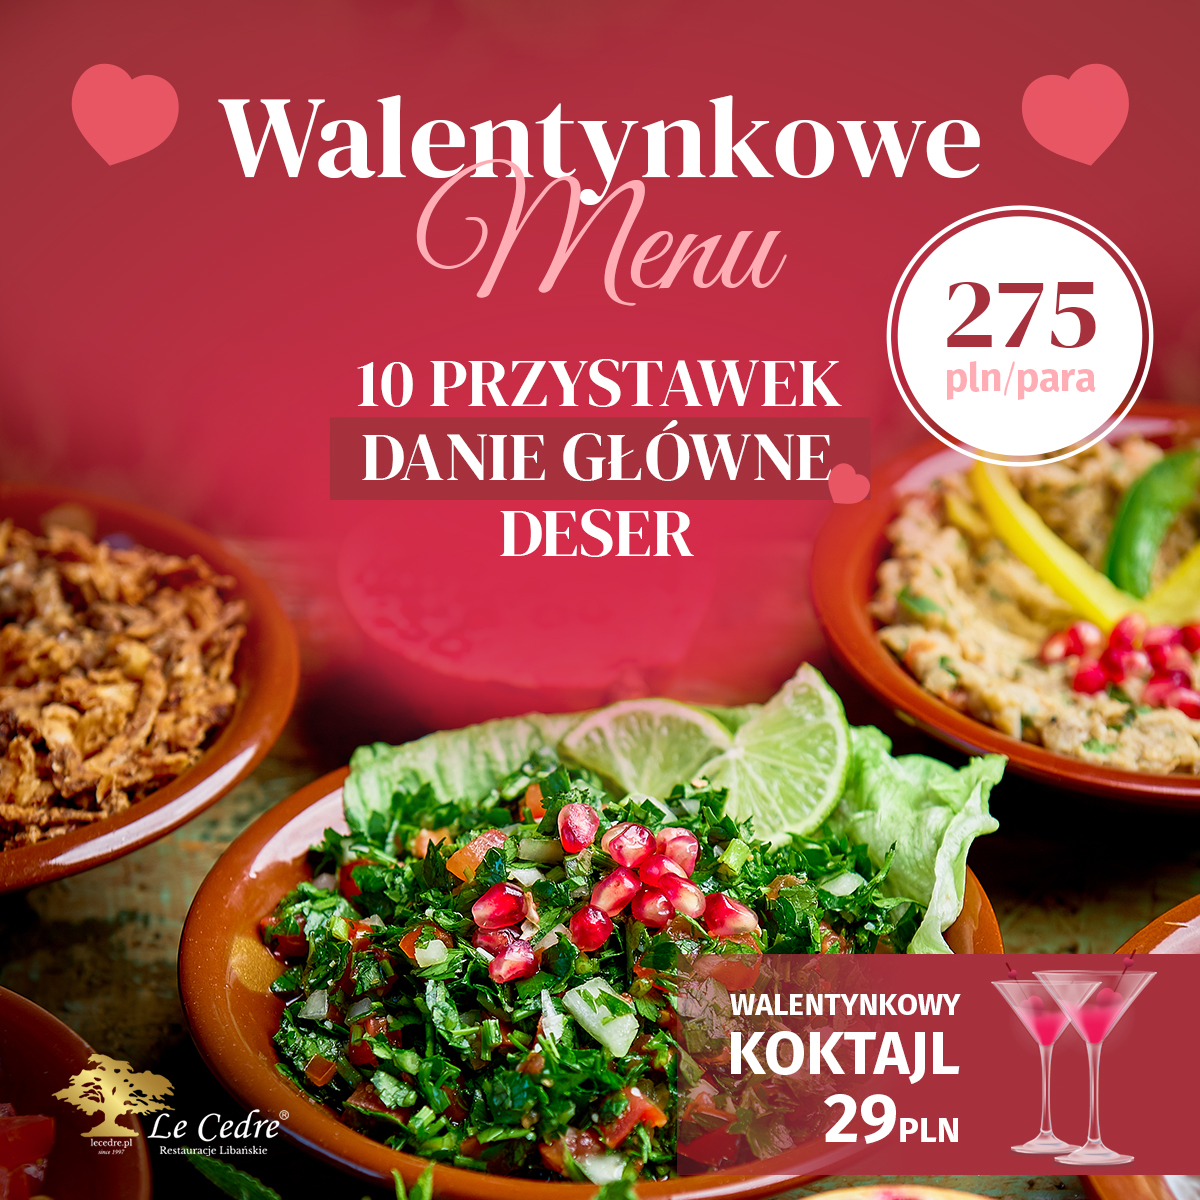 kolacja walentynkowa dla dwojga Warszawa